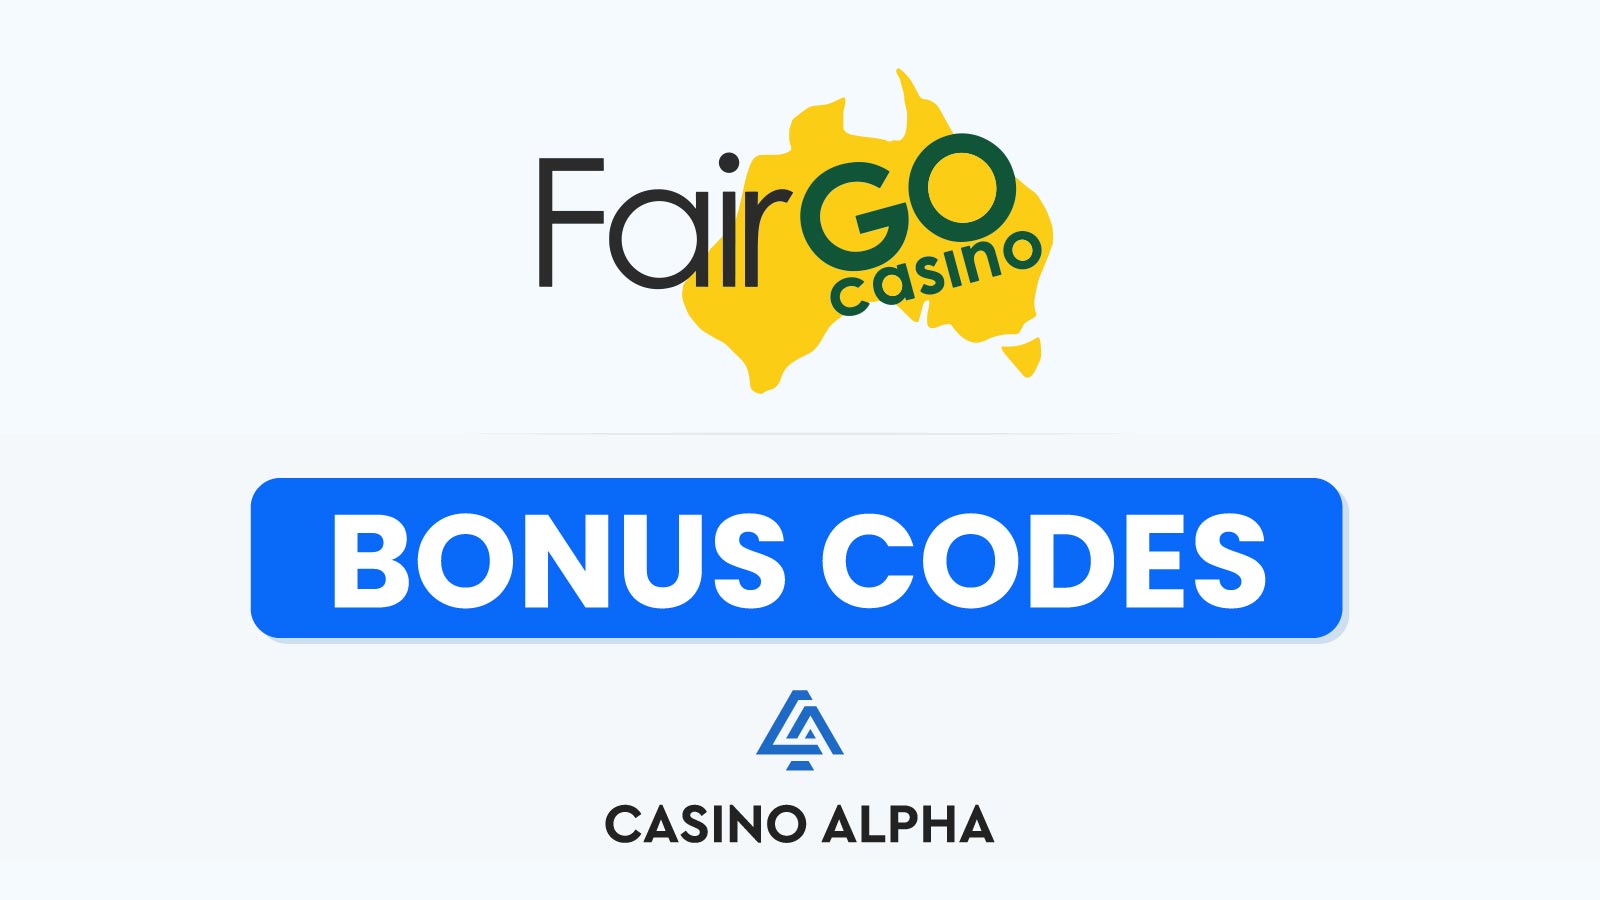 Fairgo Casino: The Ultimate Online Gaming Destination in Australia